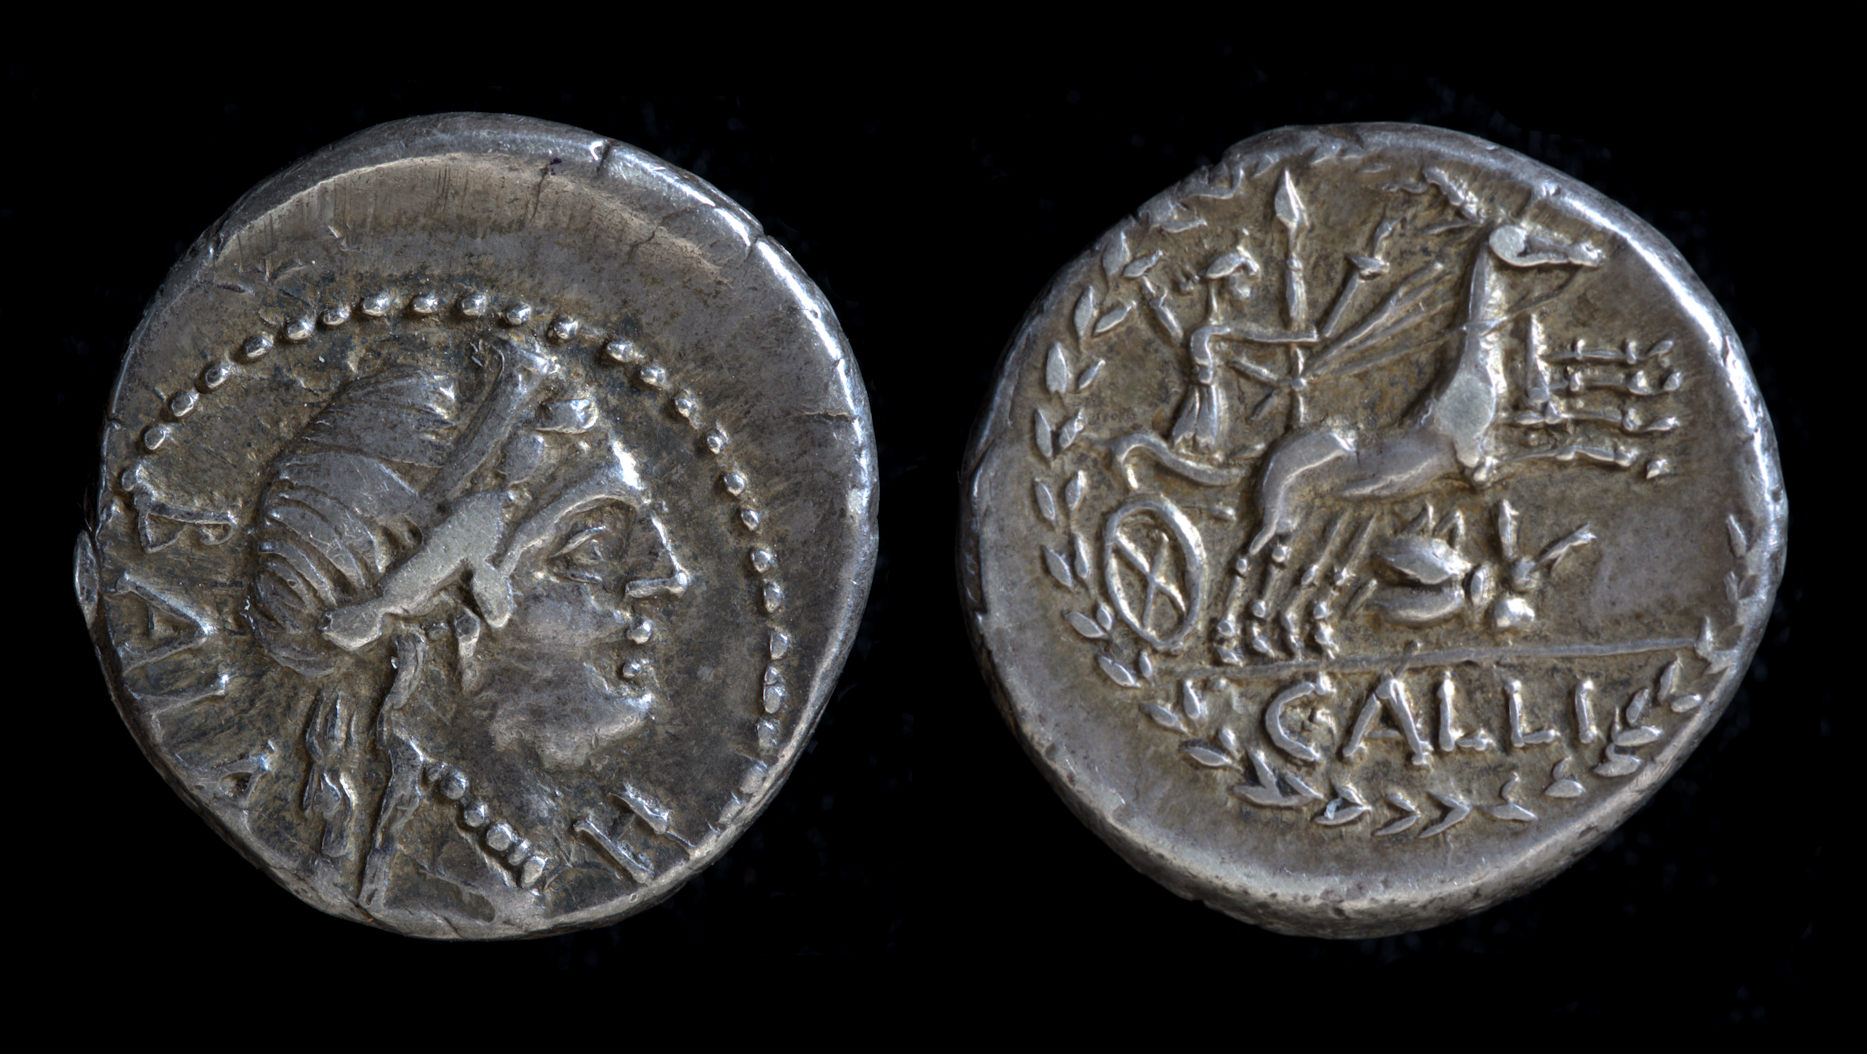 _C Allius Bala denarius.jpg